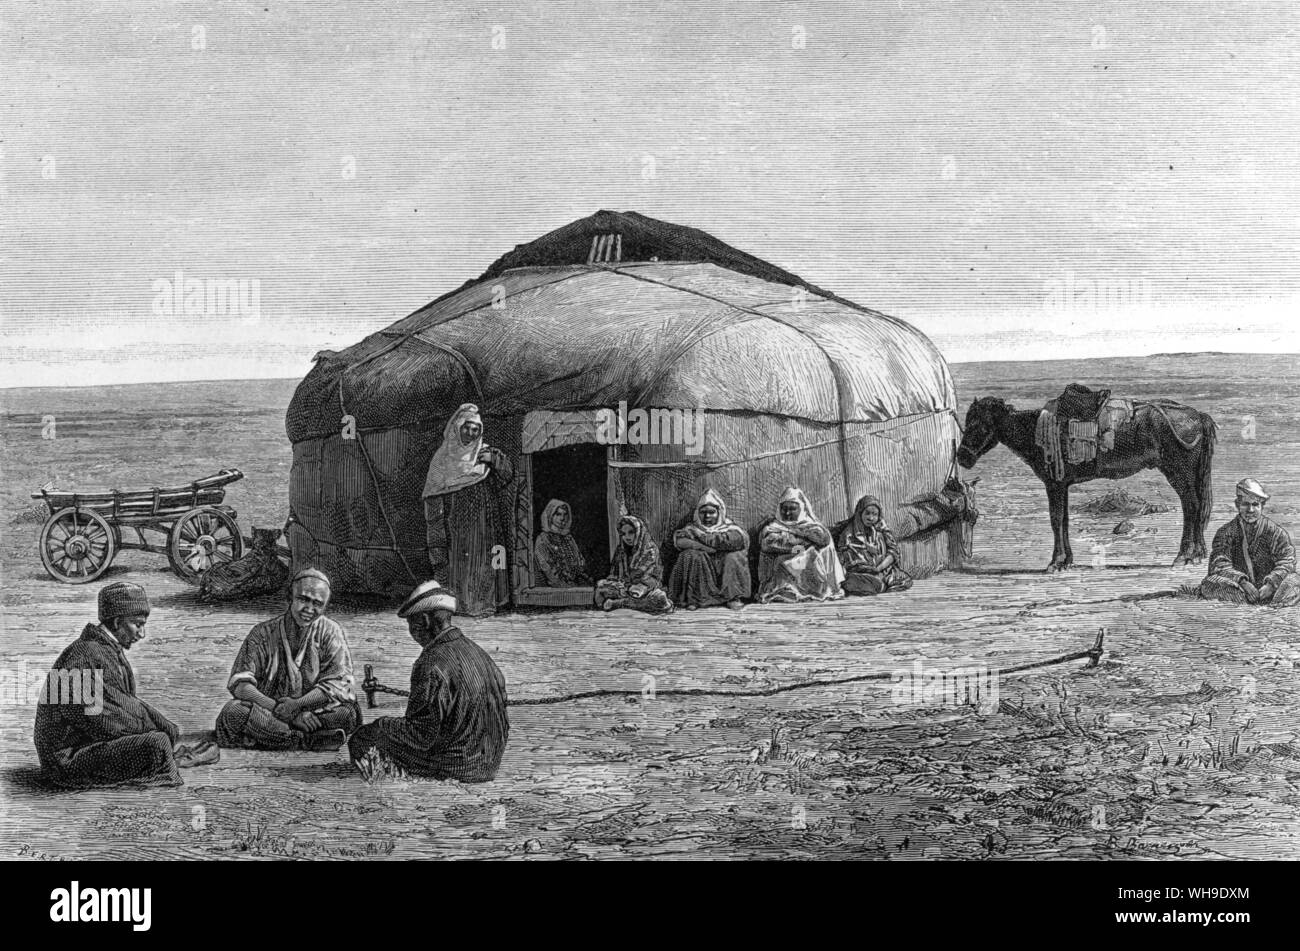 Emcampment Kirghiz sur les steppes sibériennes. Le typhus faisait rage lorsque Humboldt a traversé tellement il a été obligé de couvrir un mille milles en 9 jours. Banque D'Images